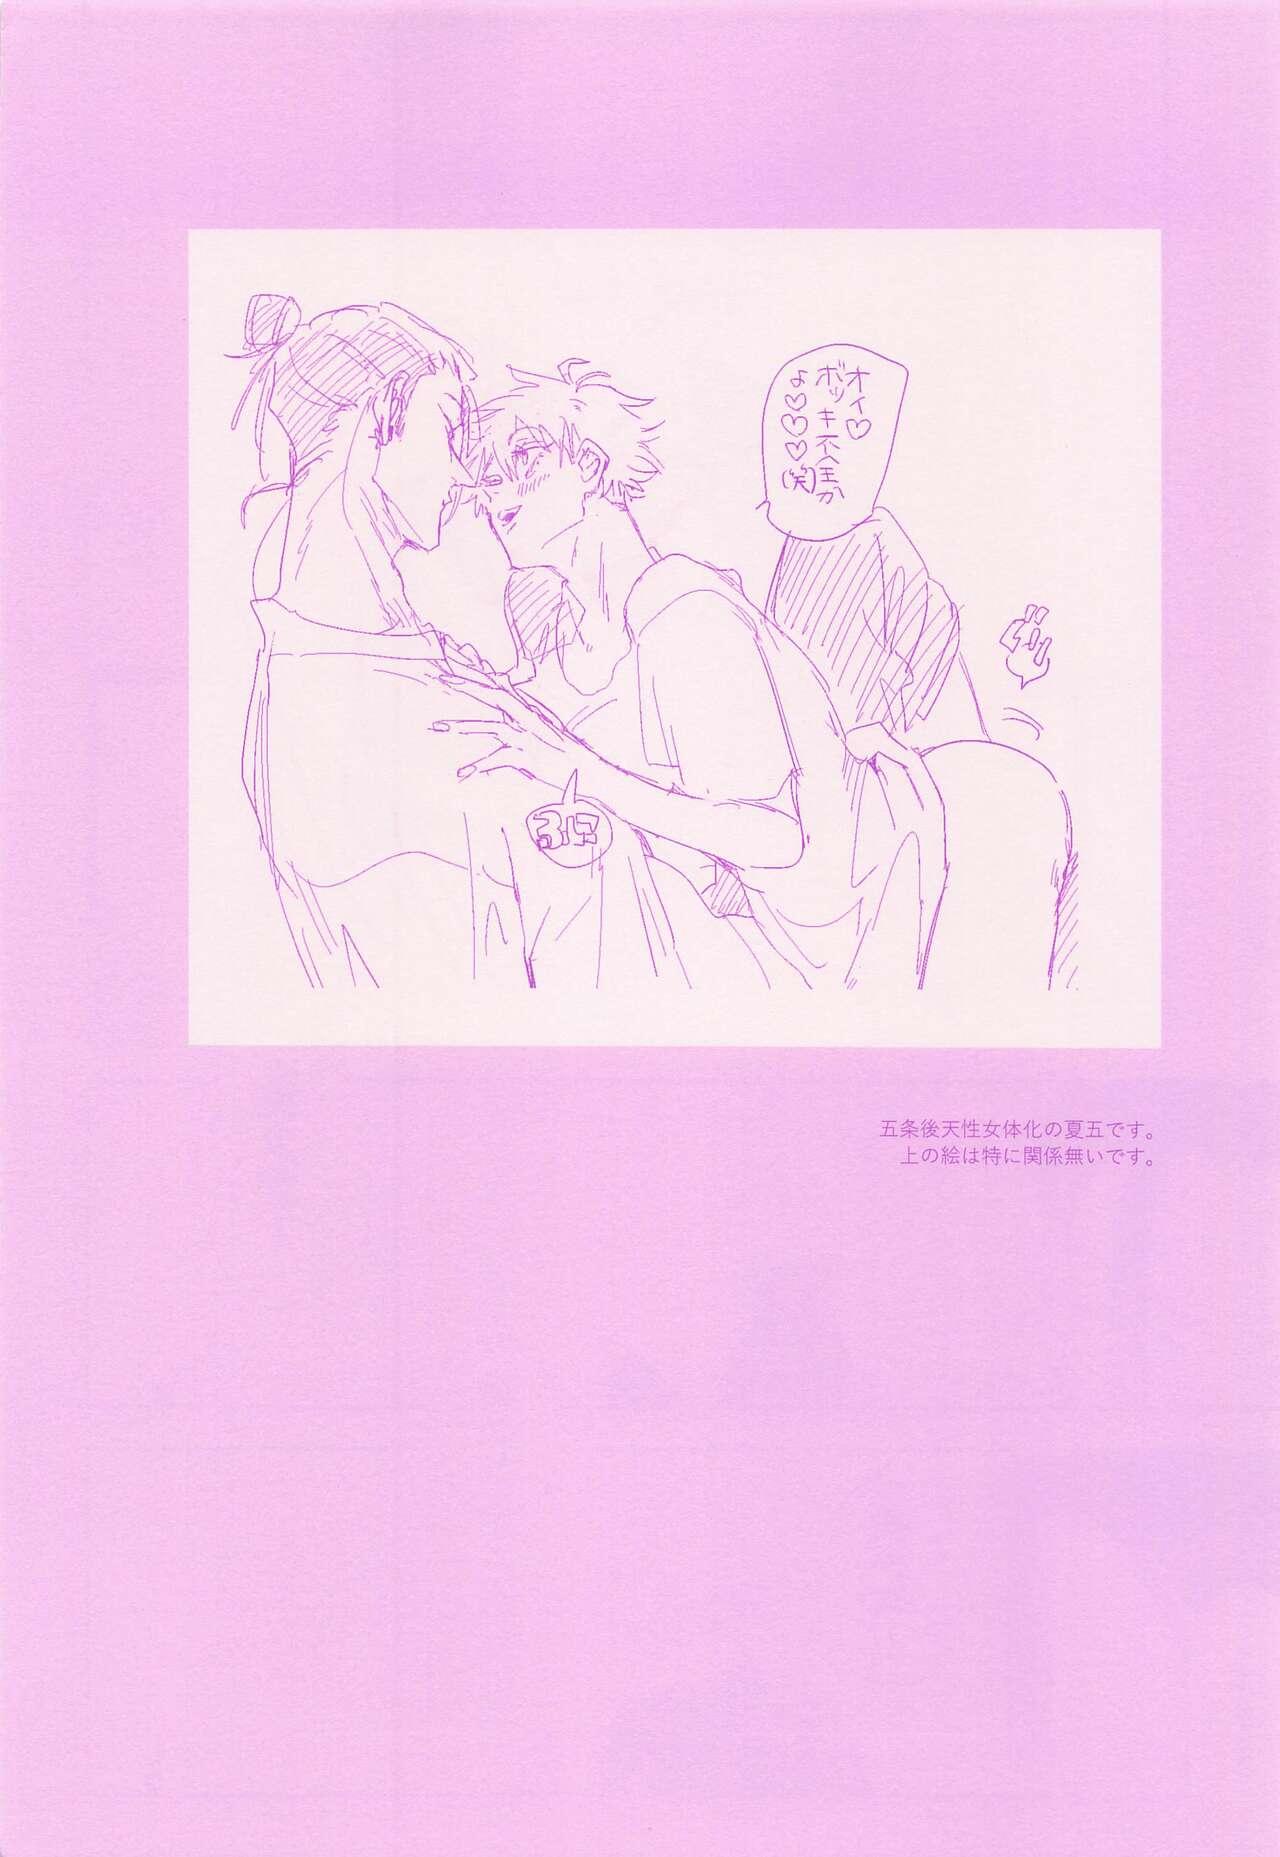 Tongue hadaihizuba／who are yo？ - Jujutsu kaisen Free Fucking - Page 4